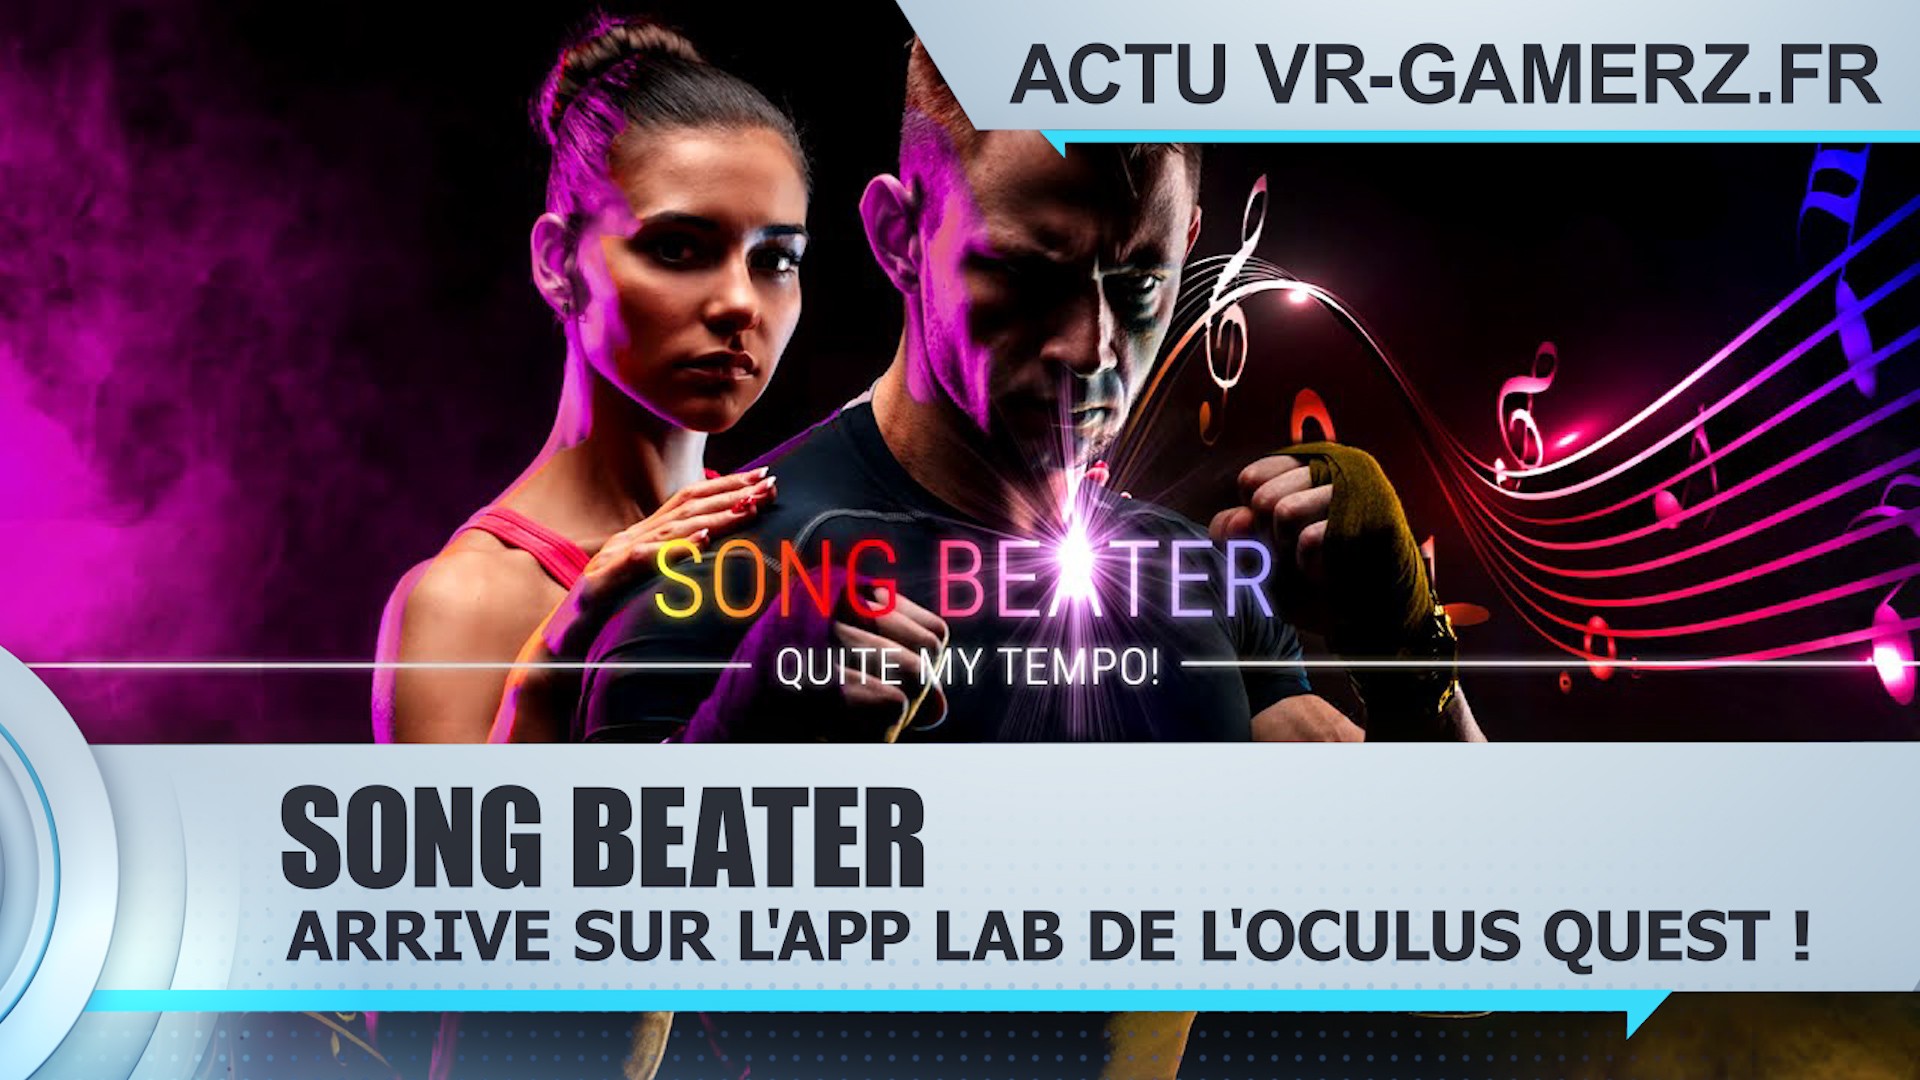 Song Beater est disponible sur l’App lab de l’Oculus quest !